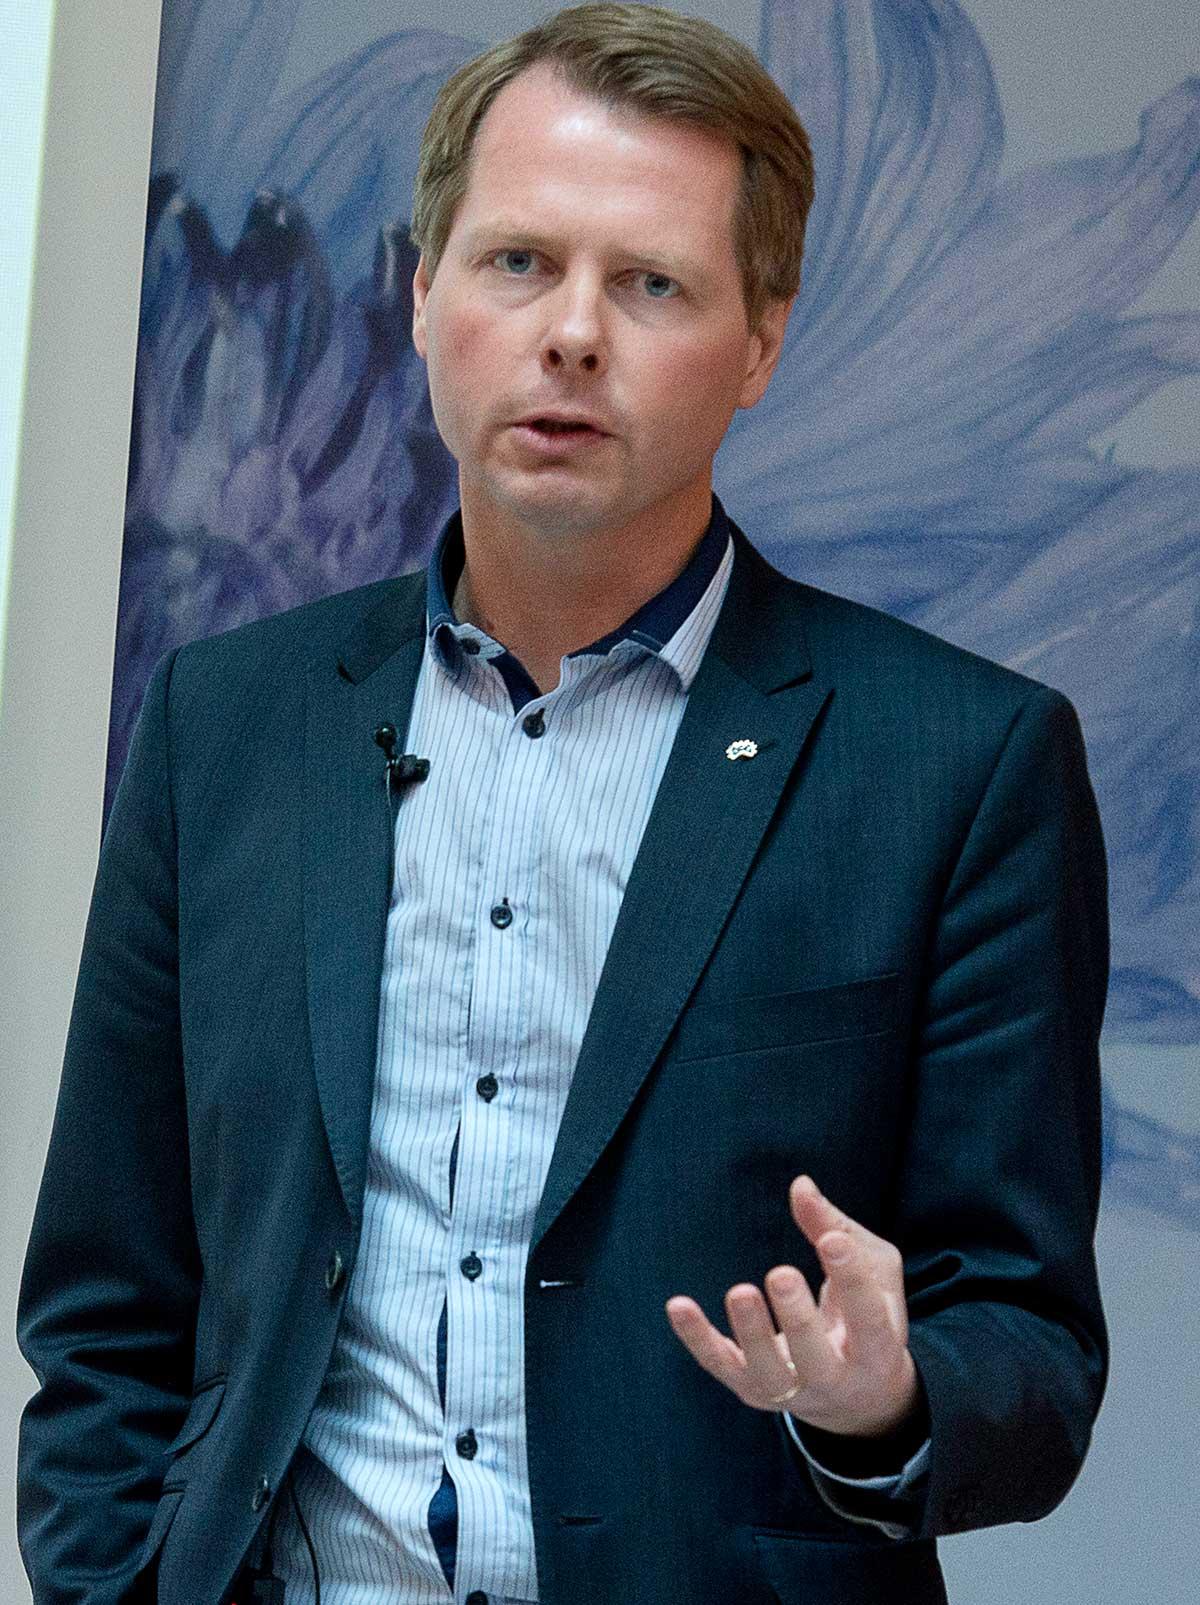 Christer Nylander (FP).